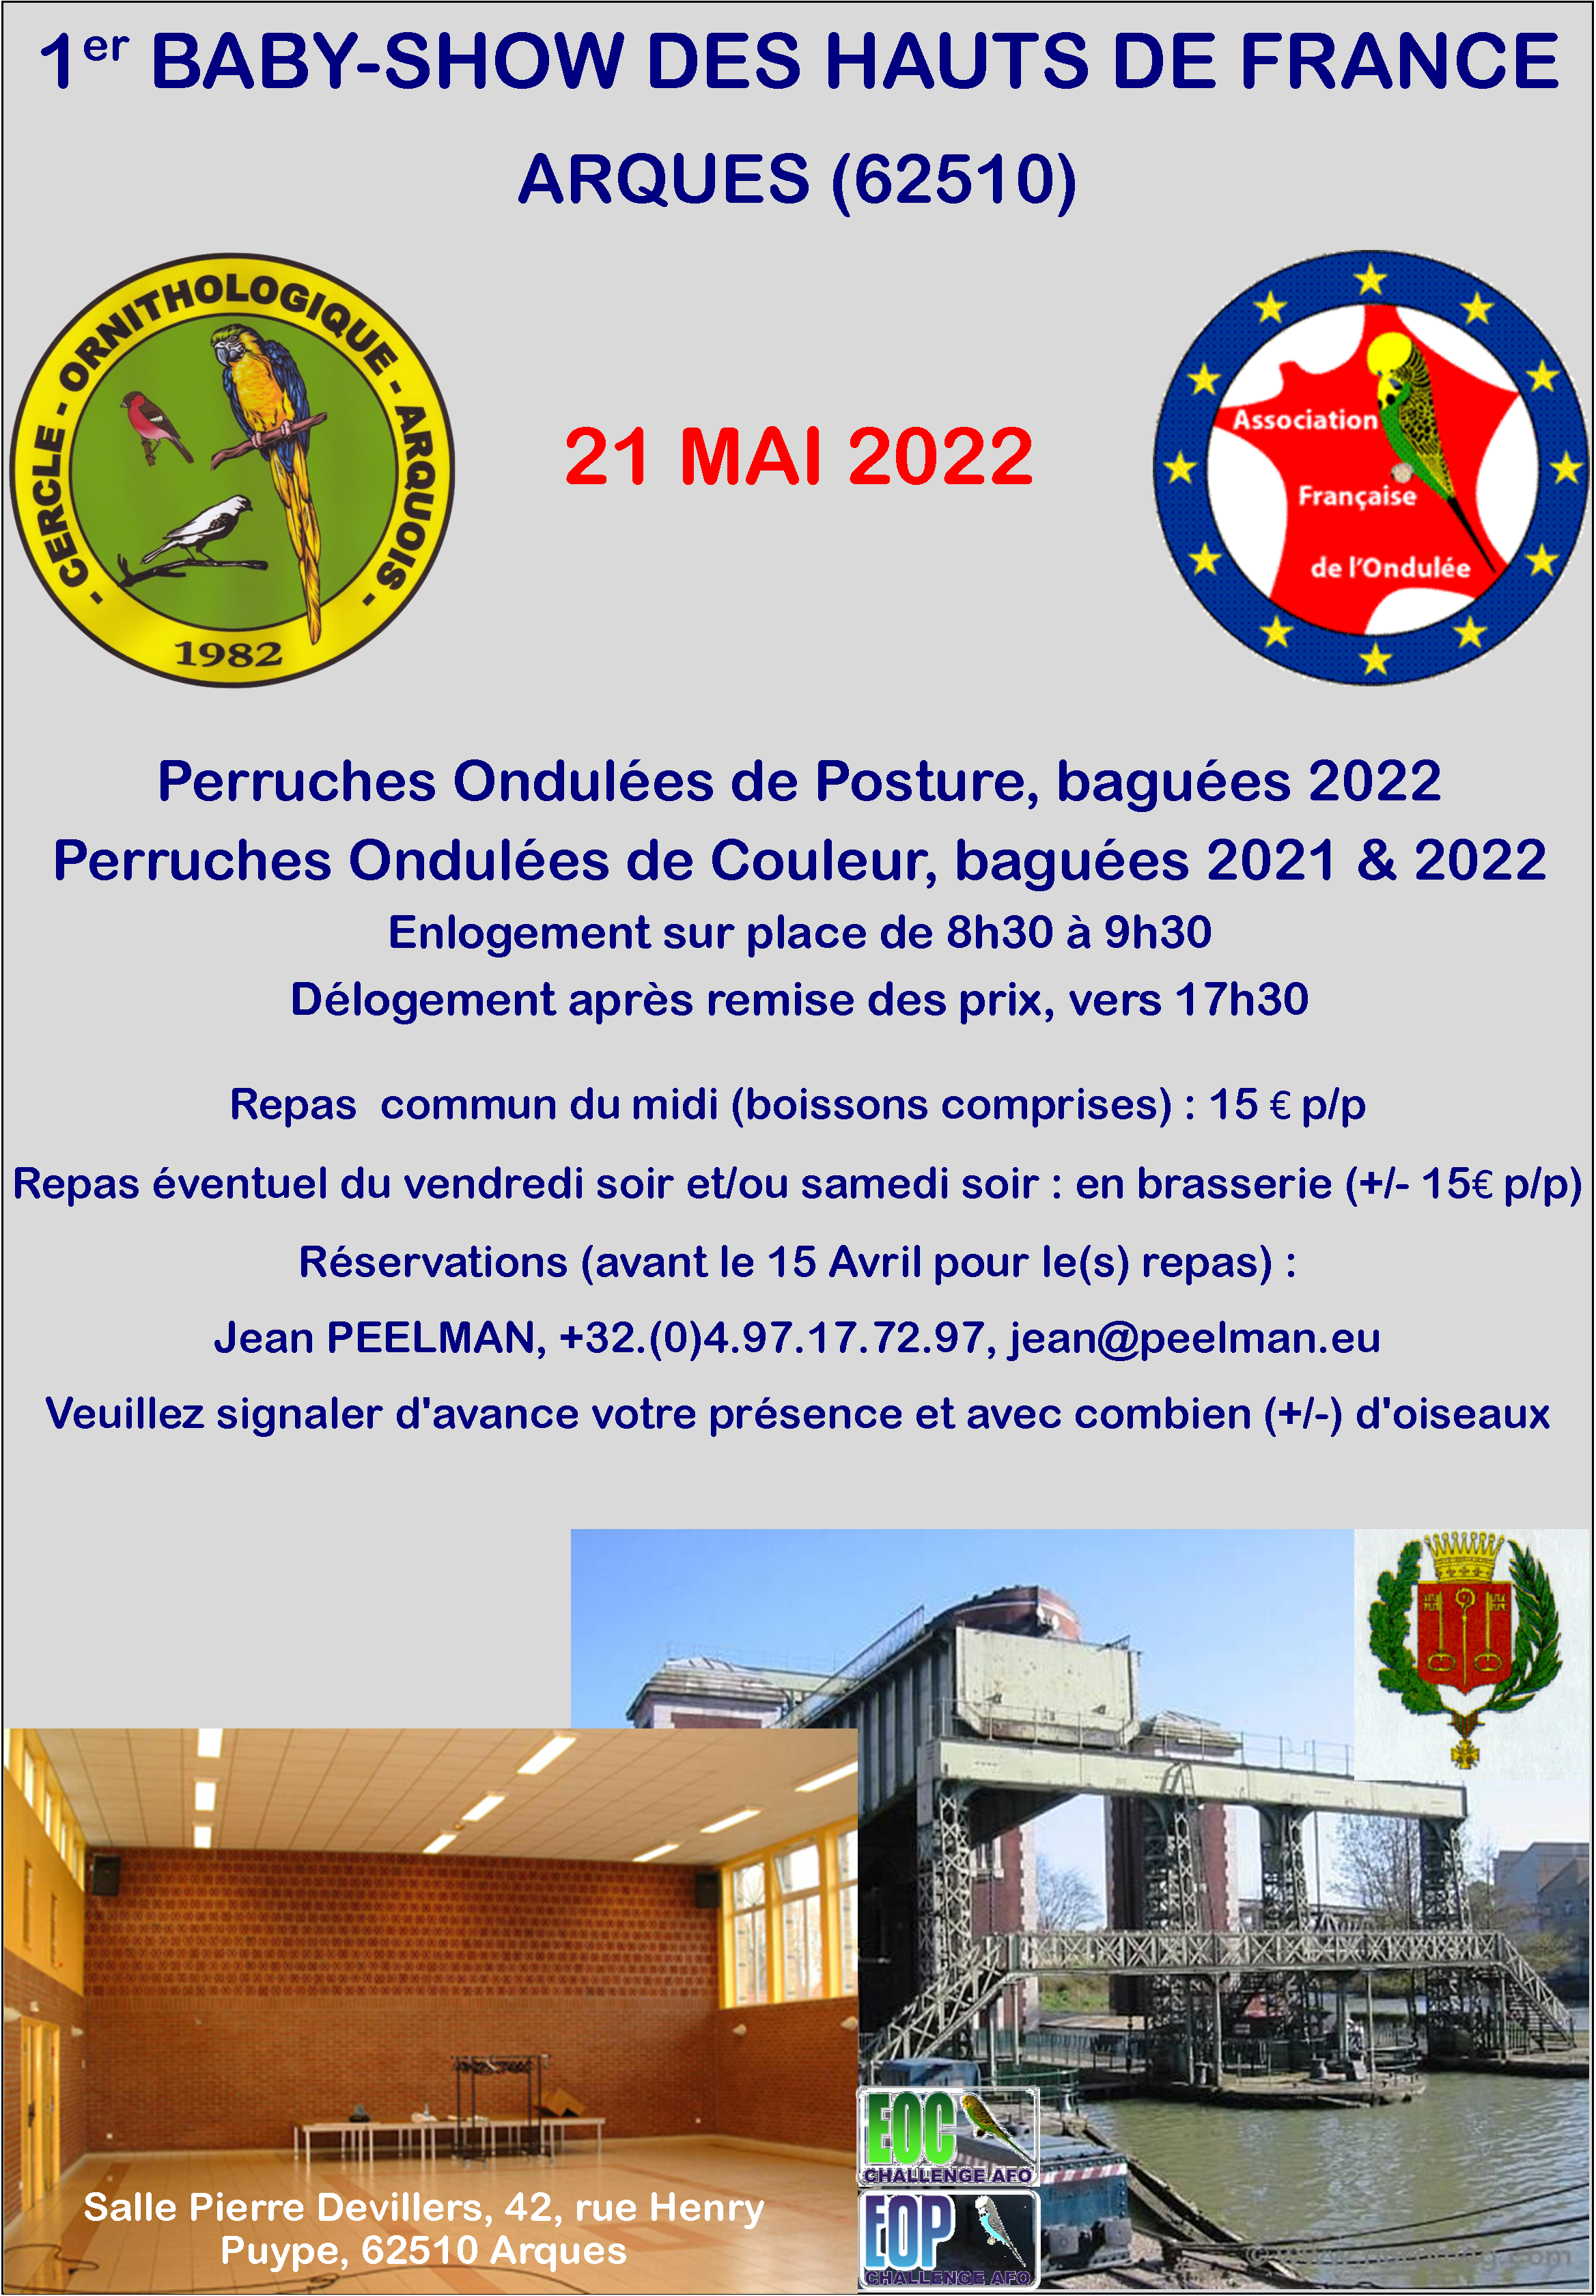 BabyShow Haut de France 2022